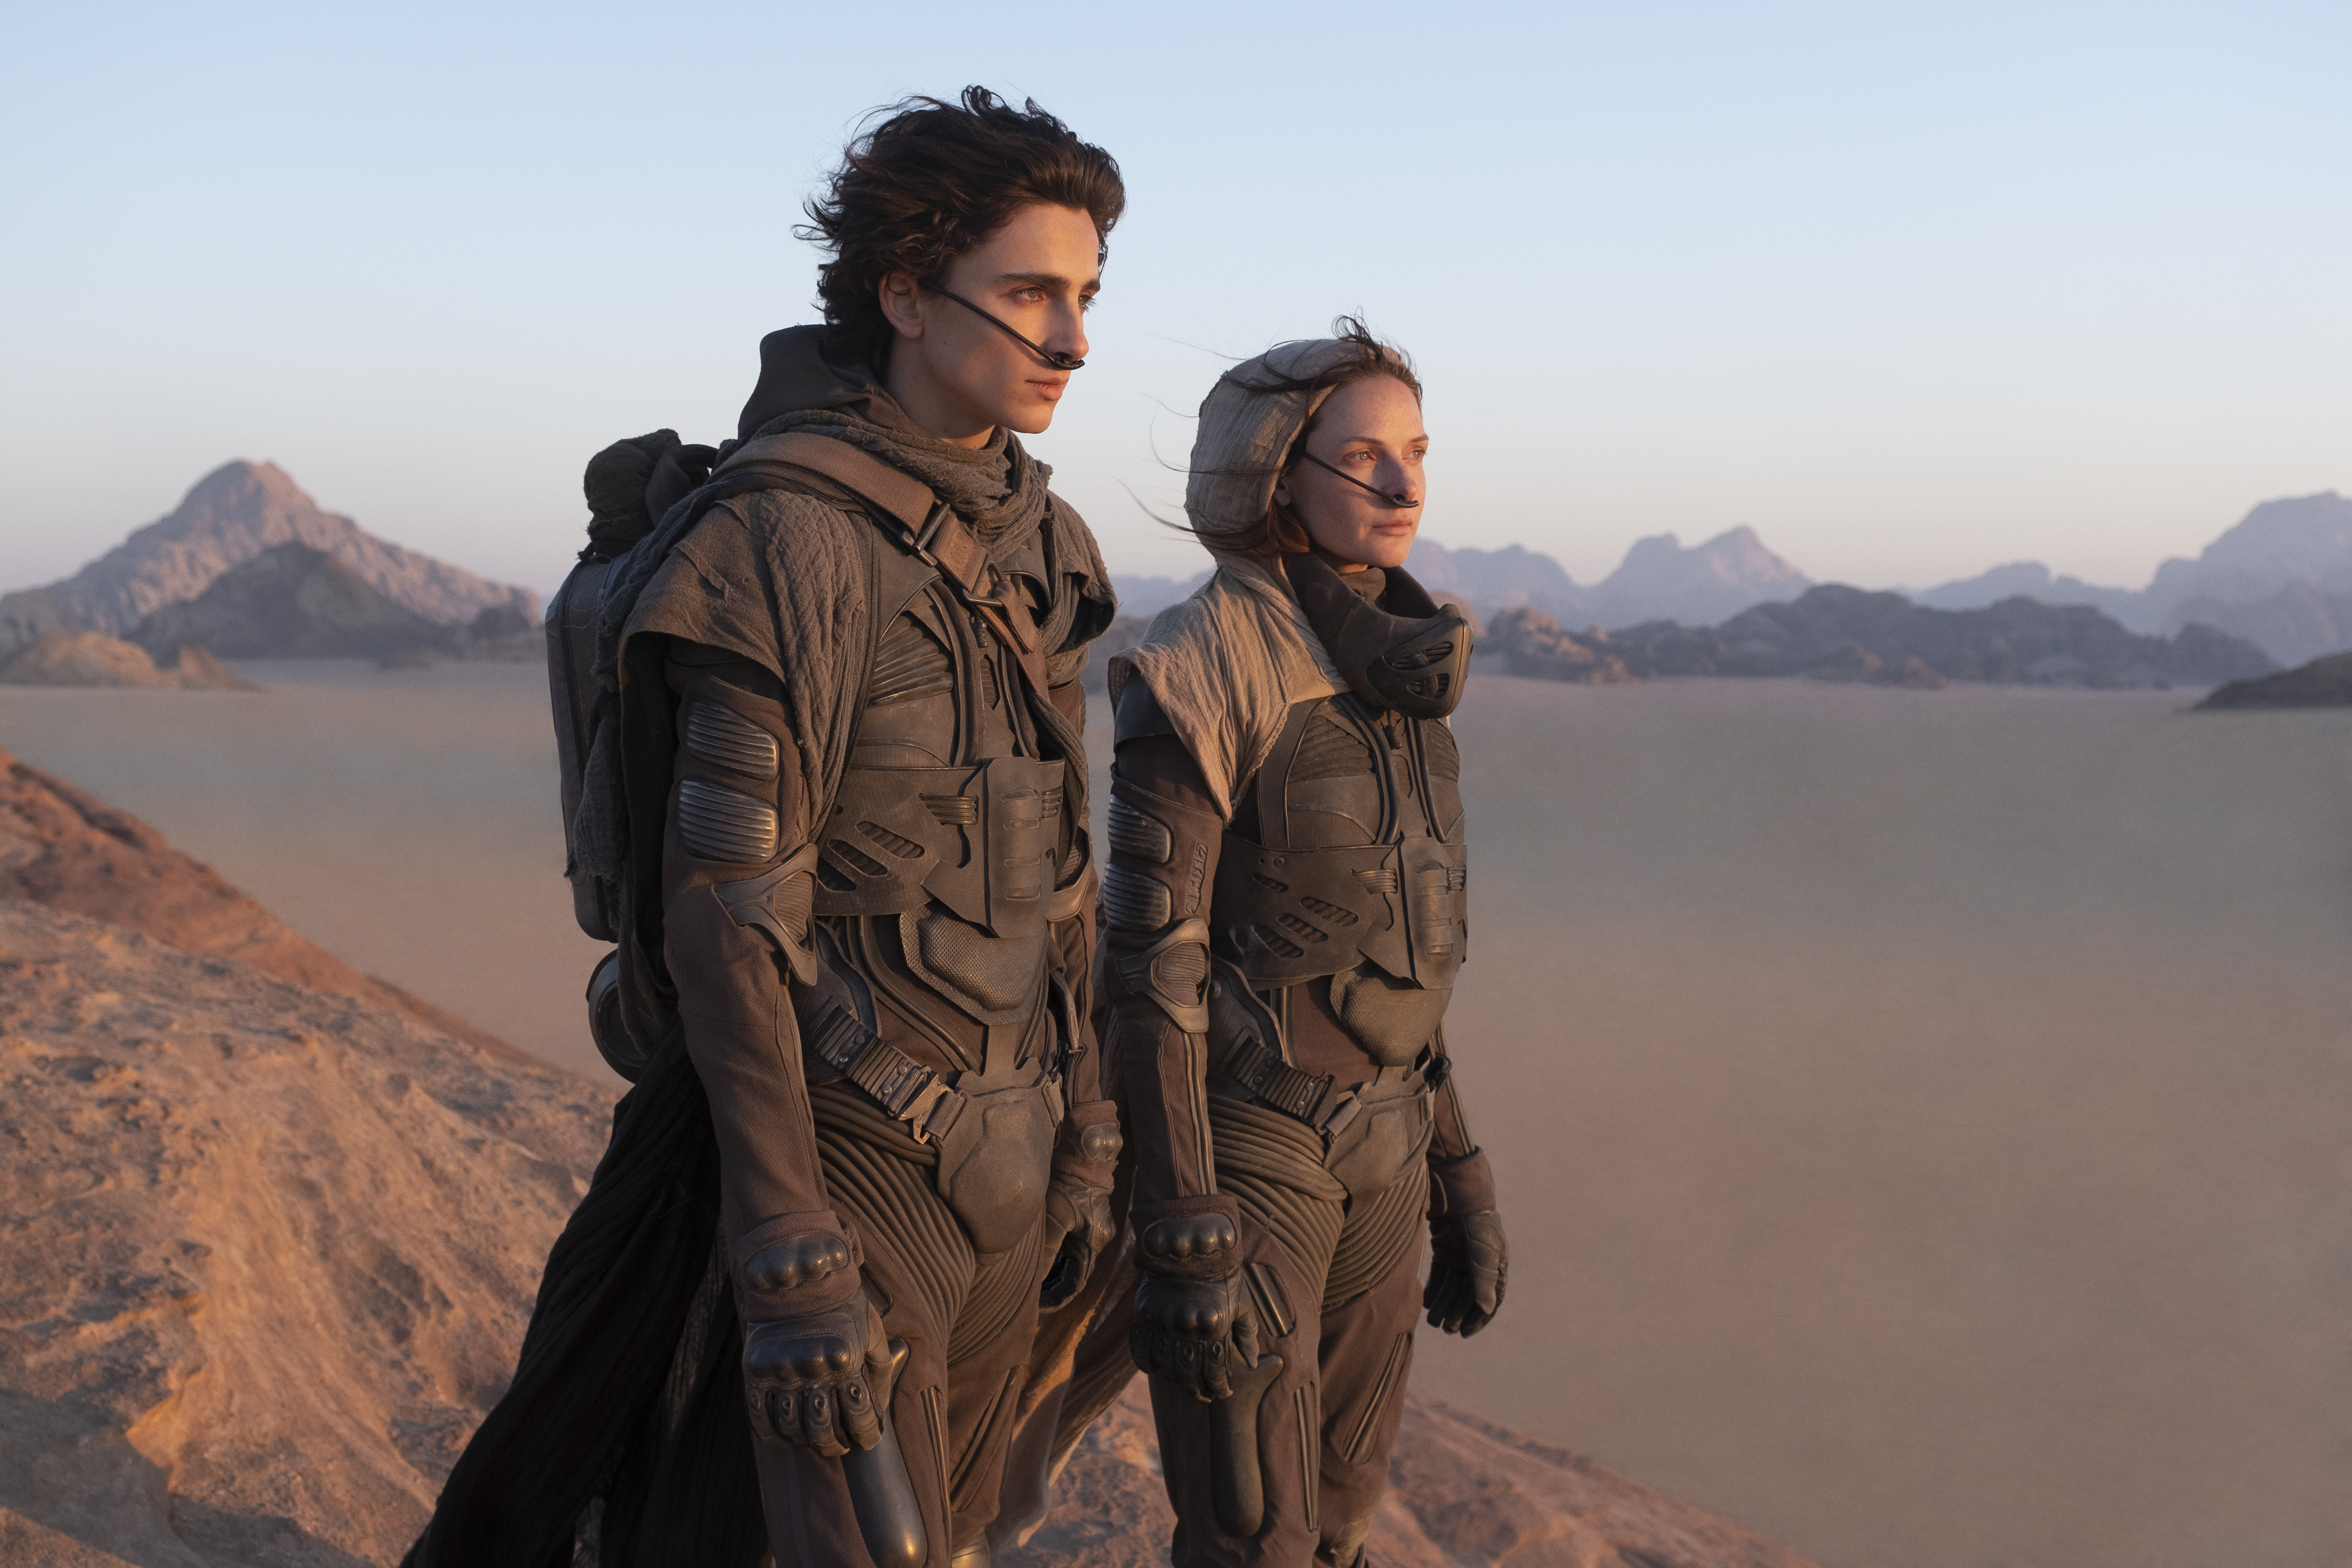 Denis Villeneuves versjon av science fiction-klassikeren «Dune» kommer på kino i september. Samme regissør har også spin off-serien «Dune: The Sisterhood» på gang. Han er også med på TV-dramatiseringen av Jo Nesbøs «Sønnen» som skal komme på HBO Max.